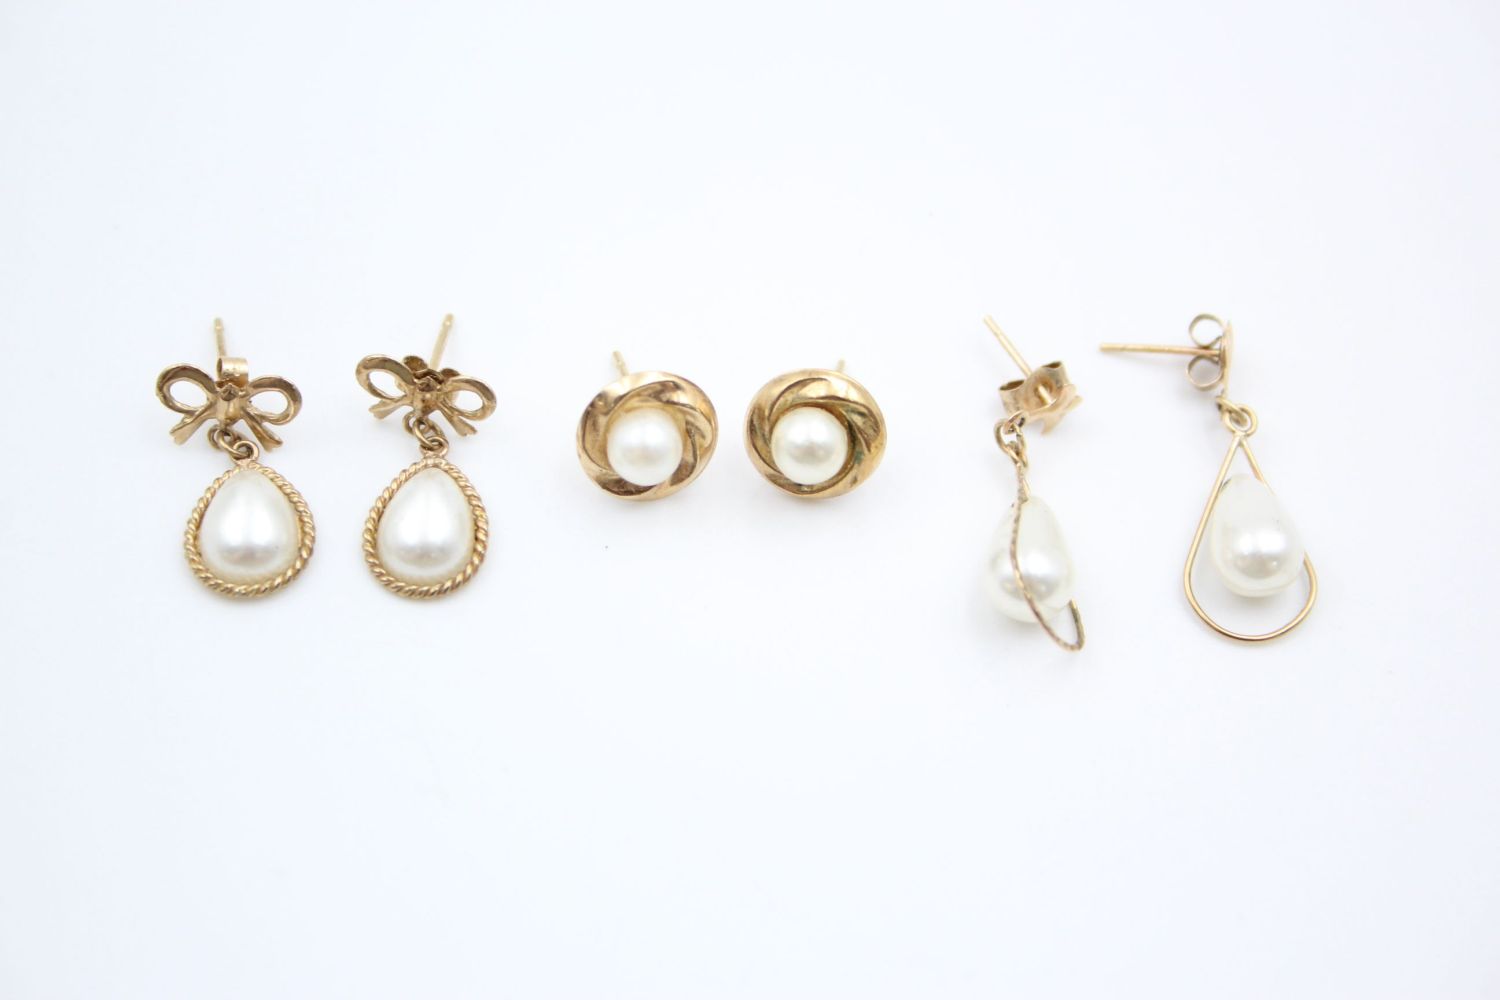 3 x 9ct gold faux pearl earrings 2.4 grams gross